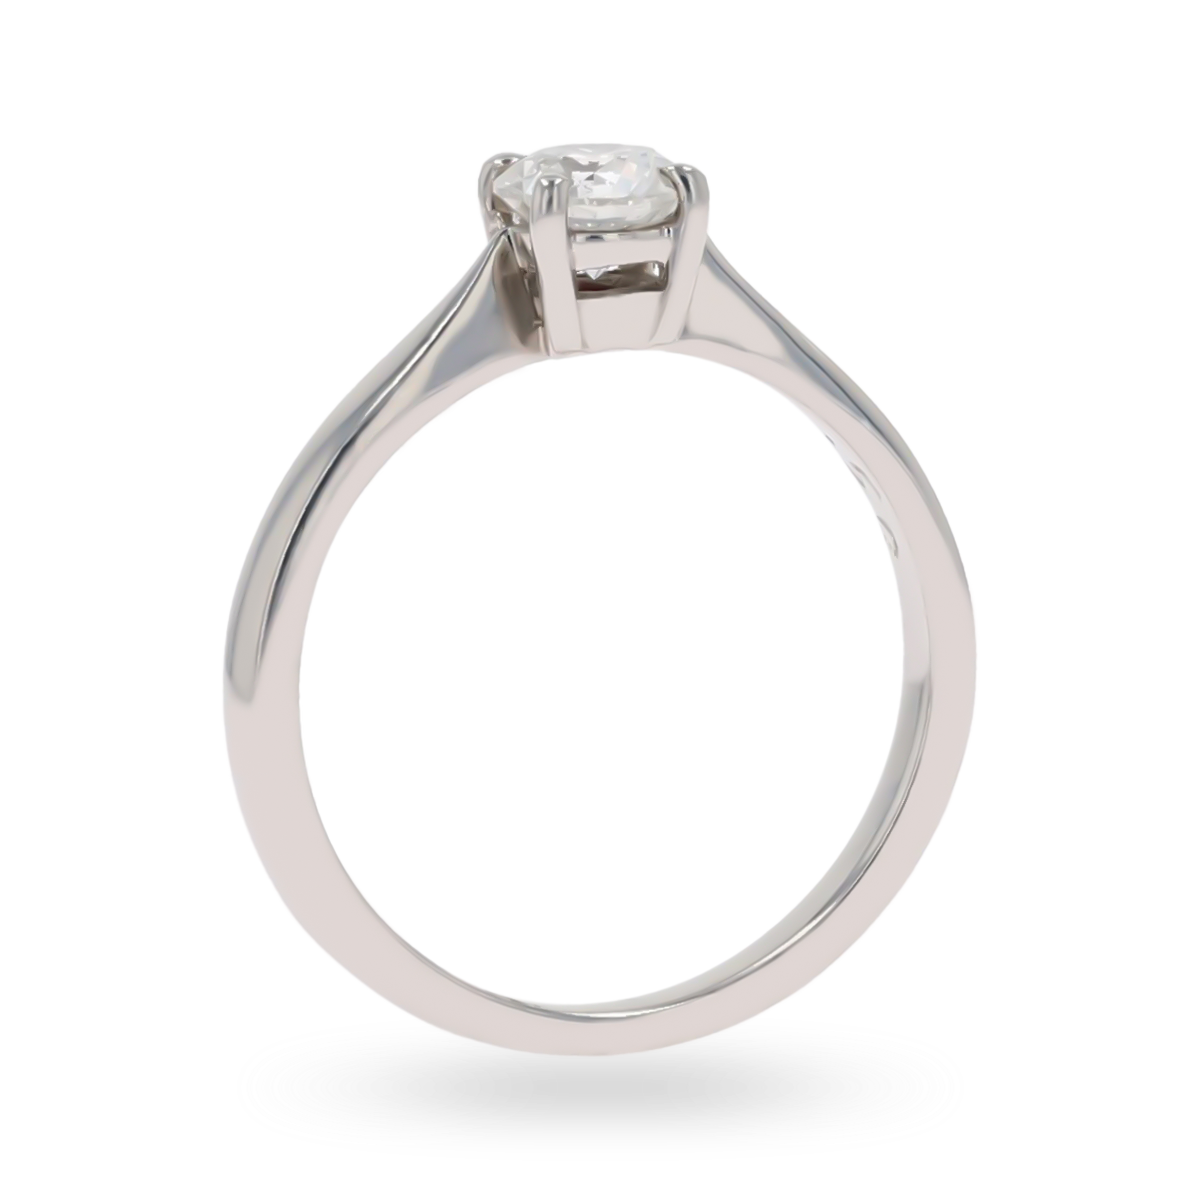 Platinum Round Brilliant Cut 0.50cts Diamond Solitaire Ring